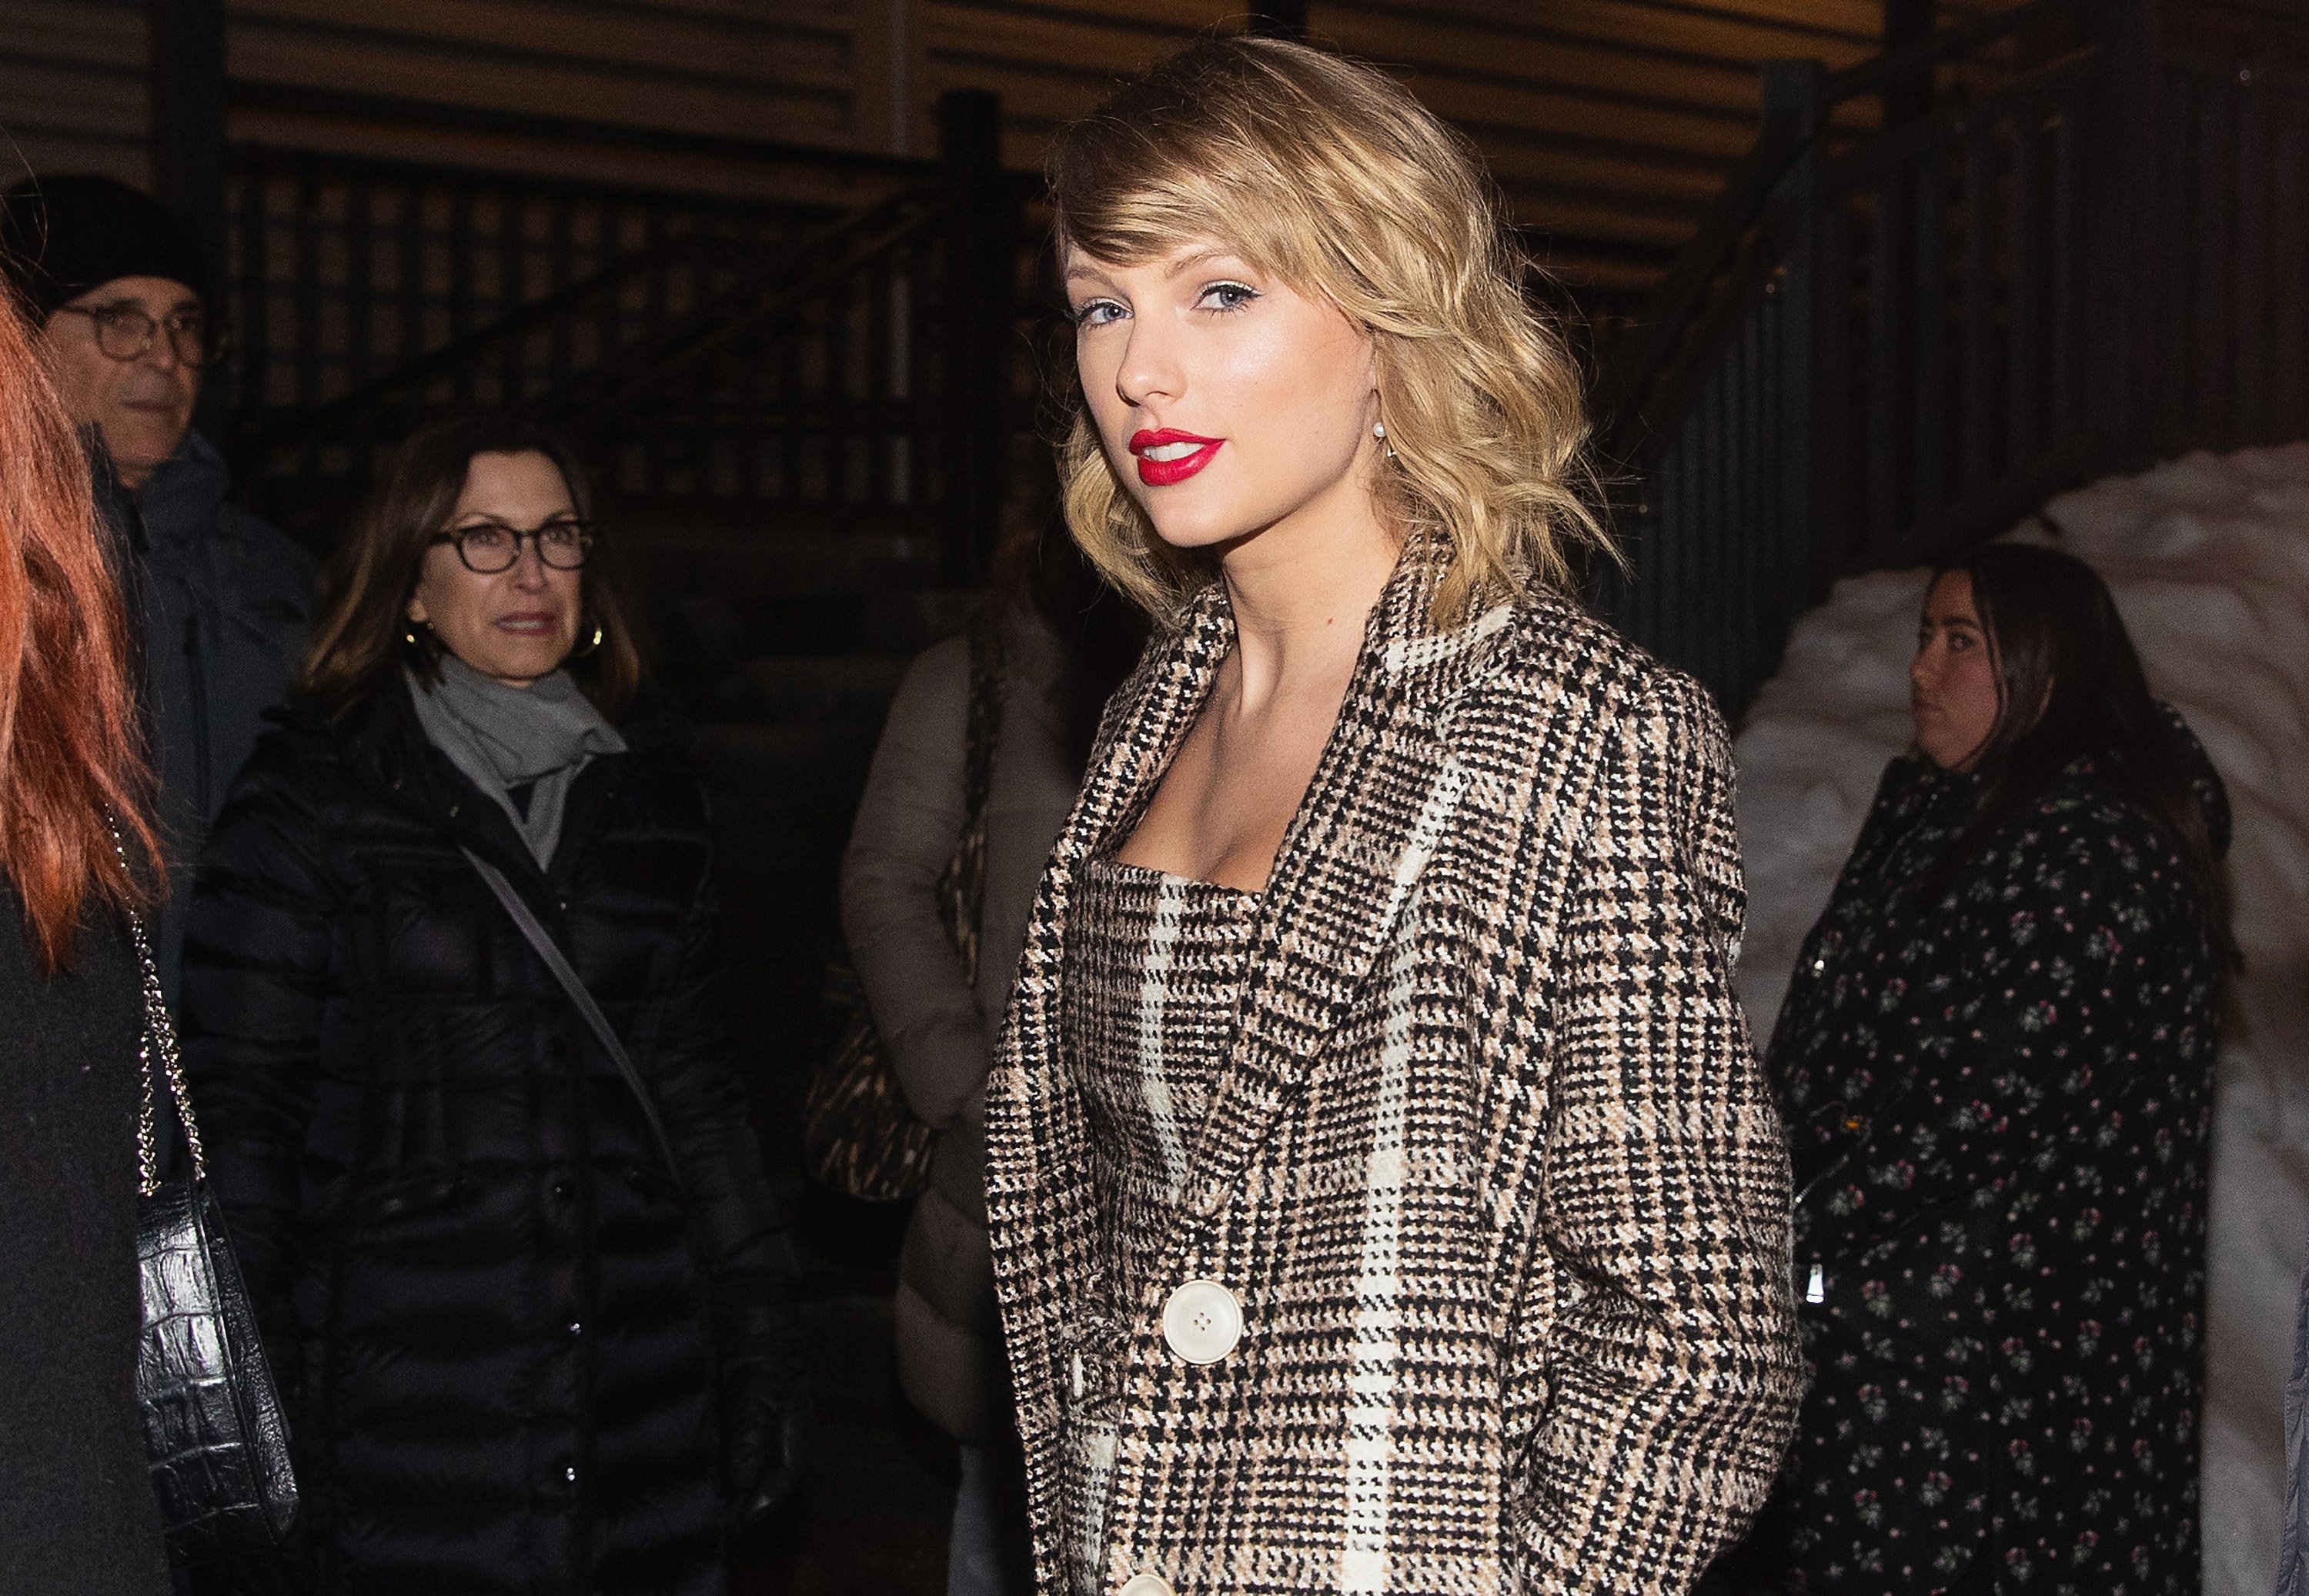 "Lavender Haze" singer Taylor Swift in a coat